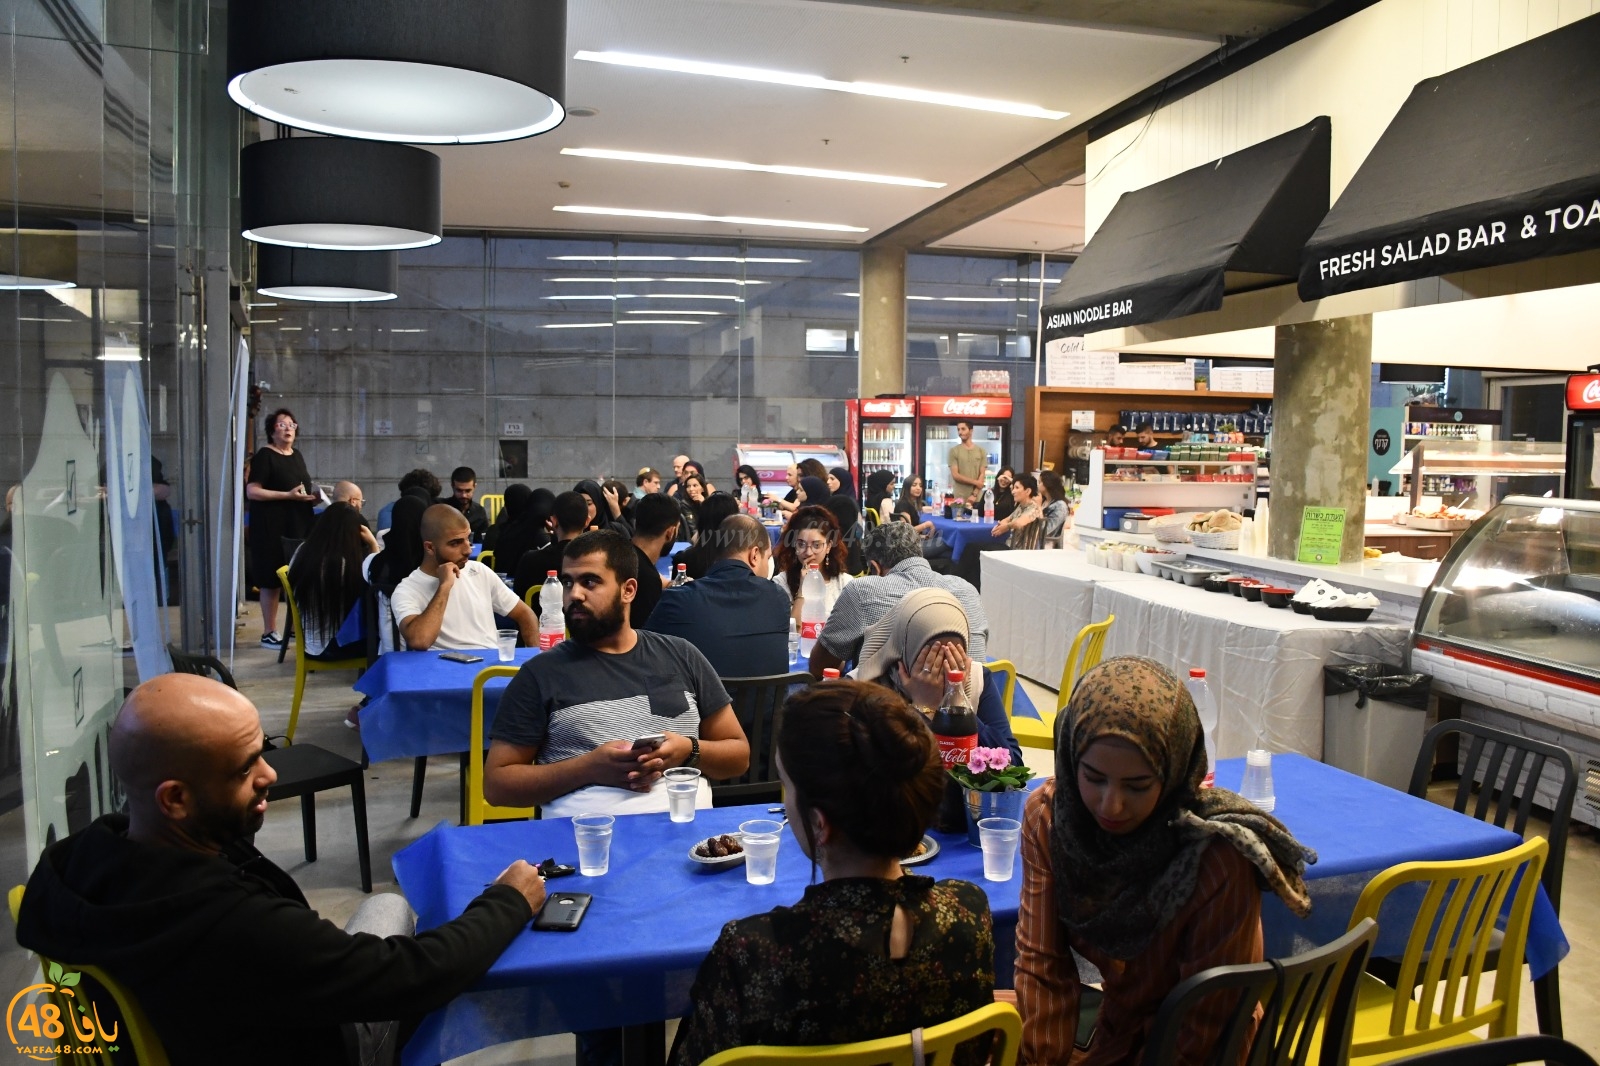  بالصور: الكلية الأكاديمية يافا تل ابيب تُنظم افطاراً جماعياً لطلابها 